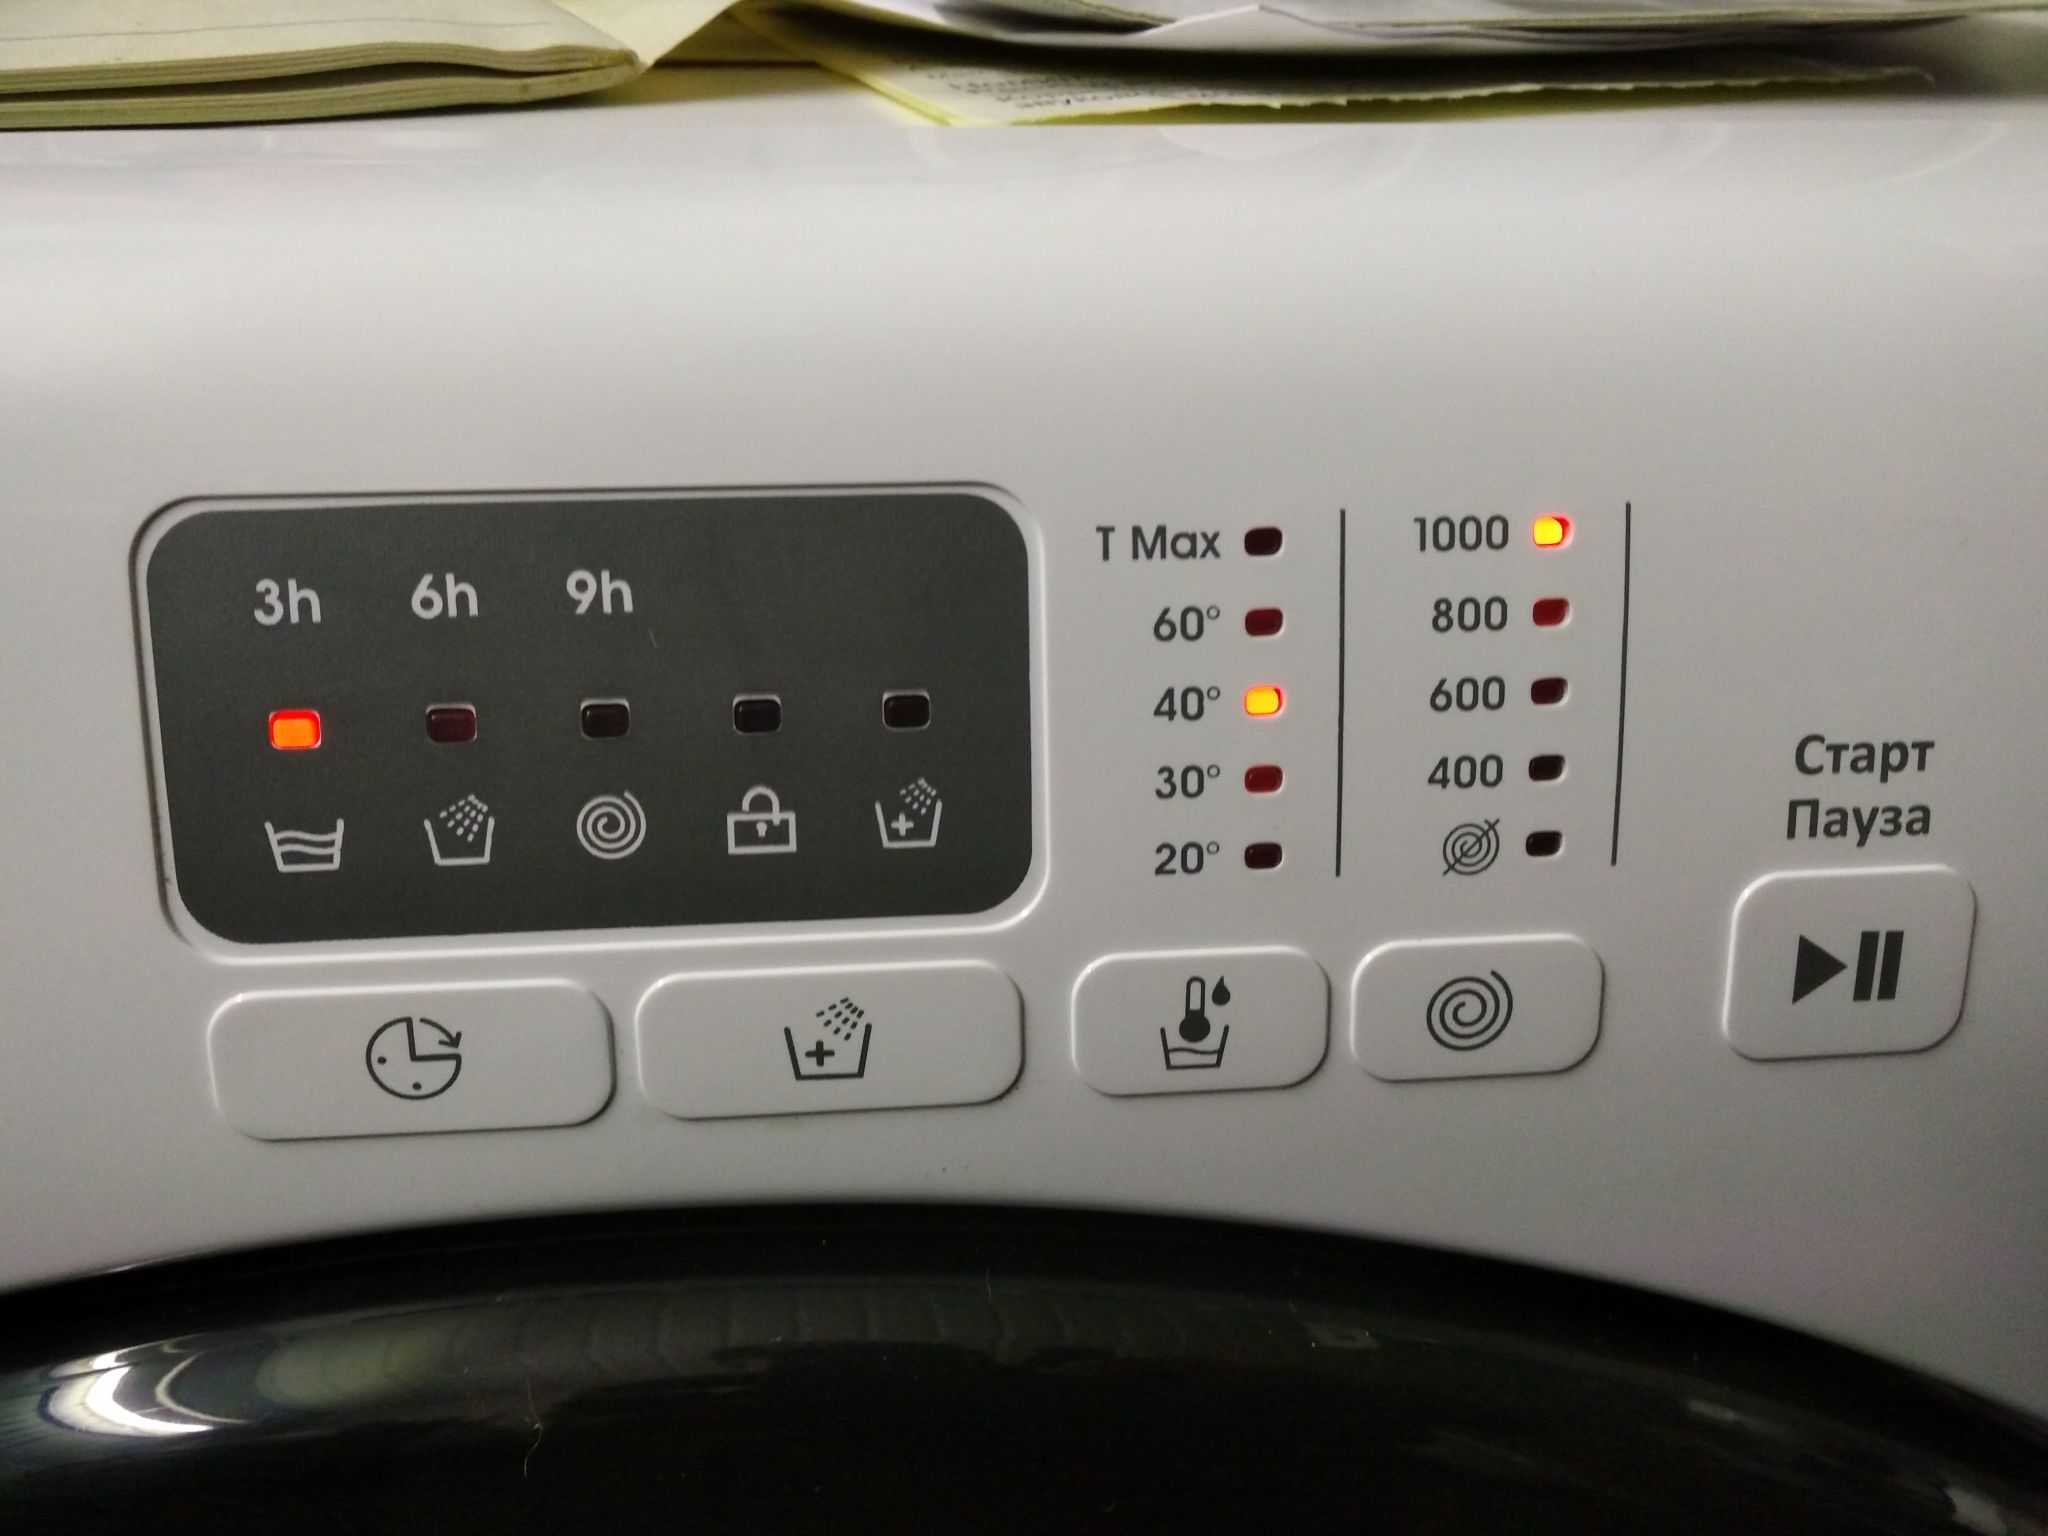 Ошибка oe на стиральной машине lg при отжиме: что значит, как исправить